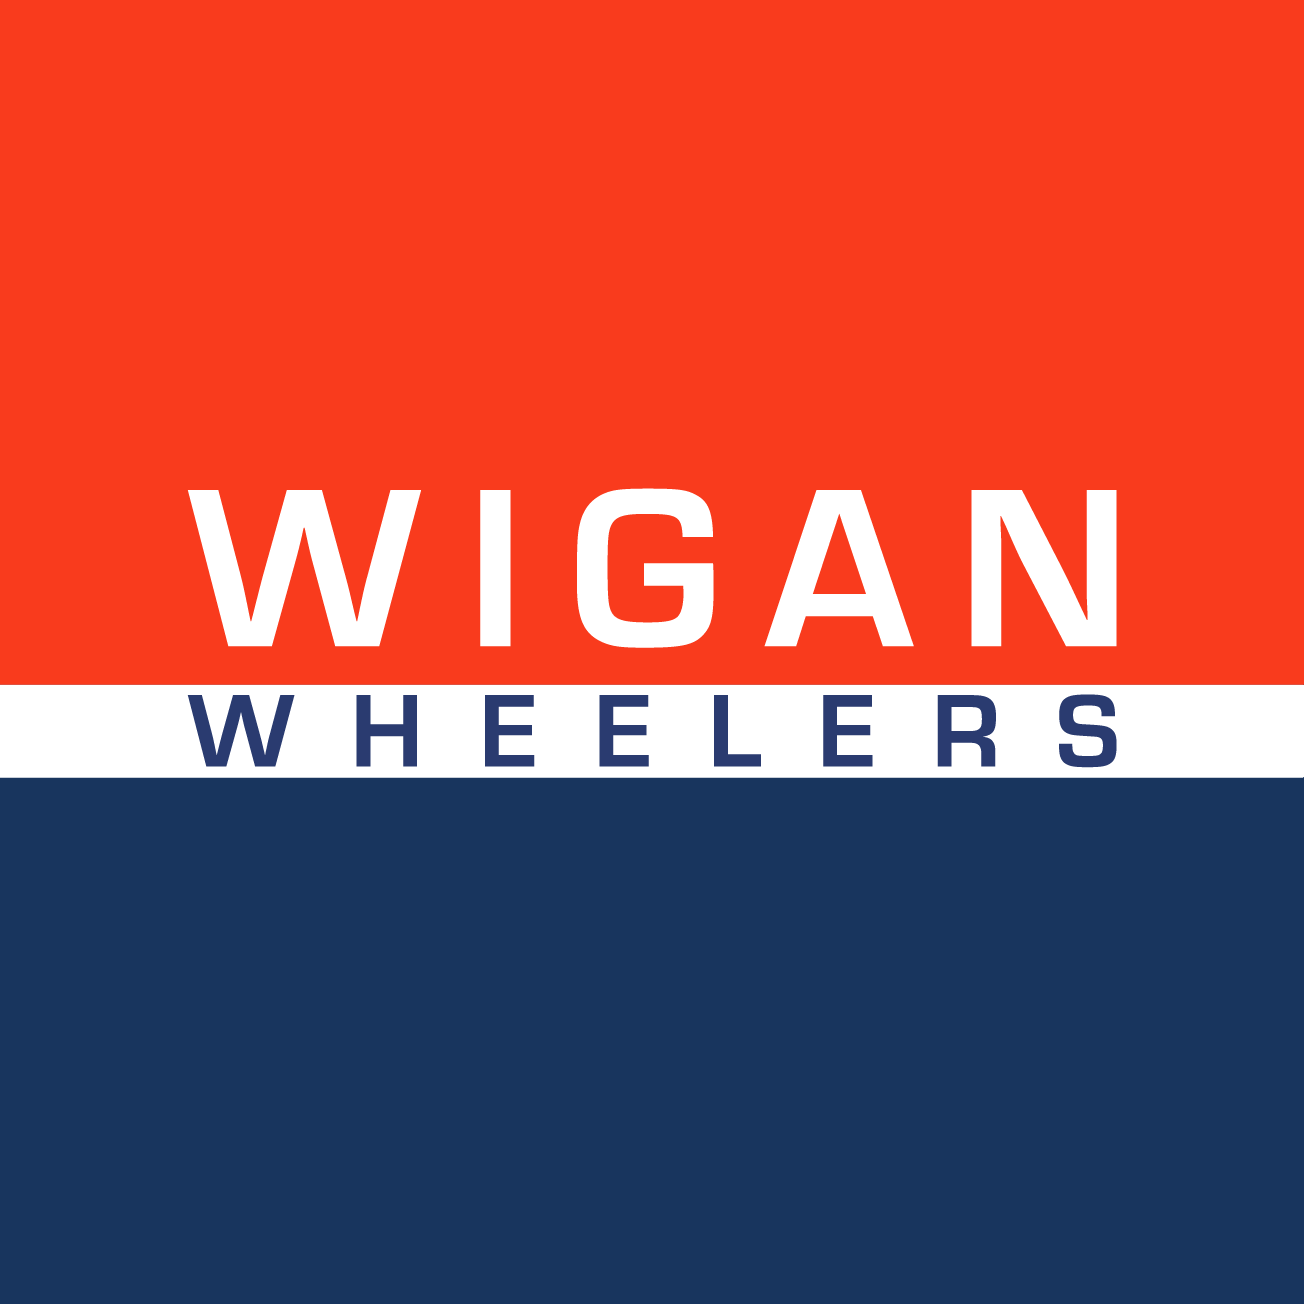 Club Image for WIGAN WHEELERS & TRIATHLON CLUB